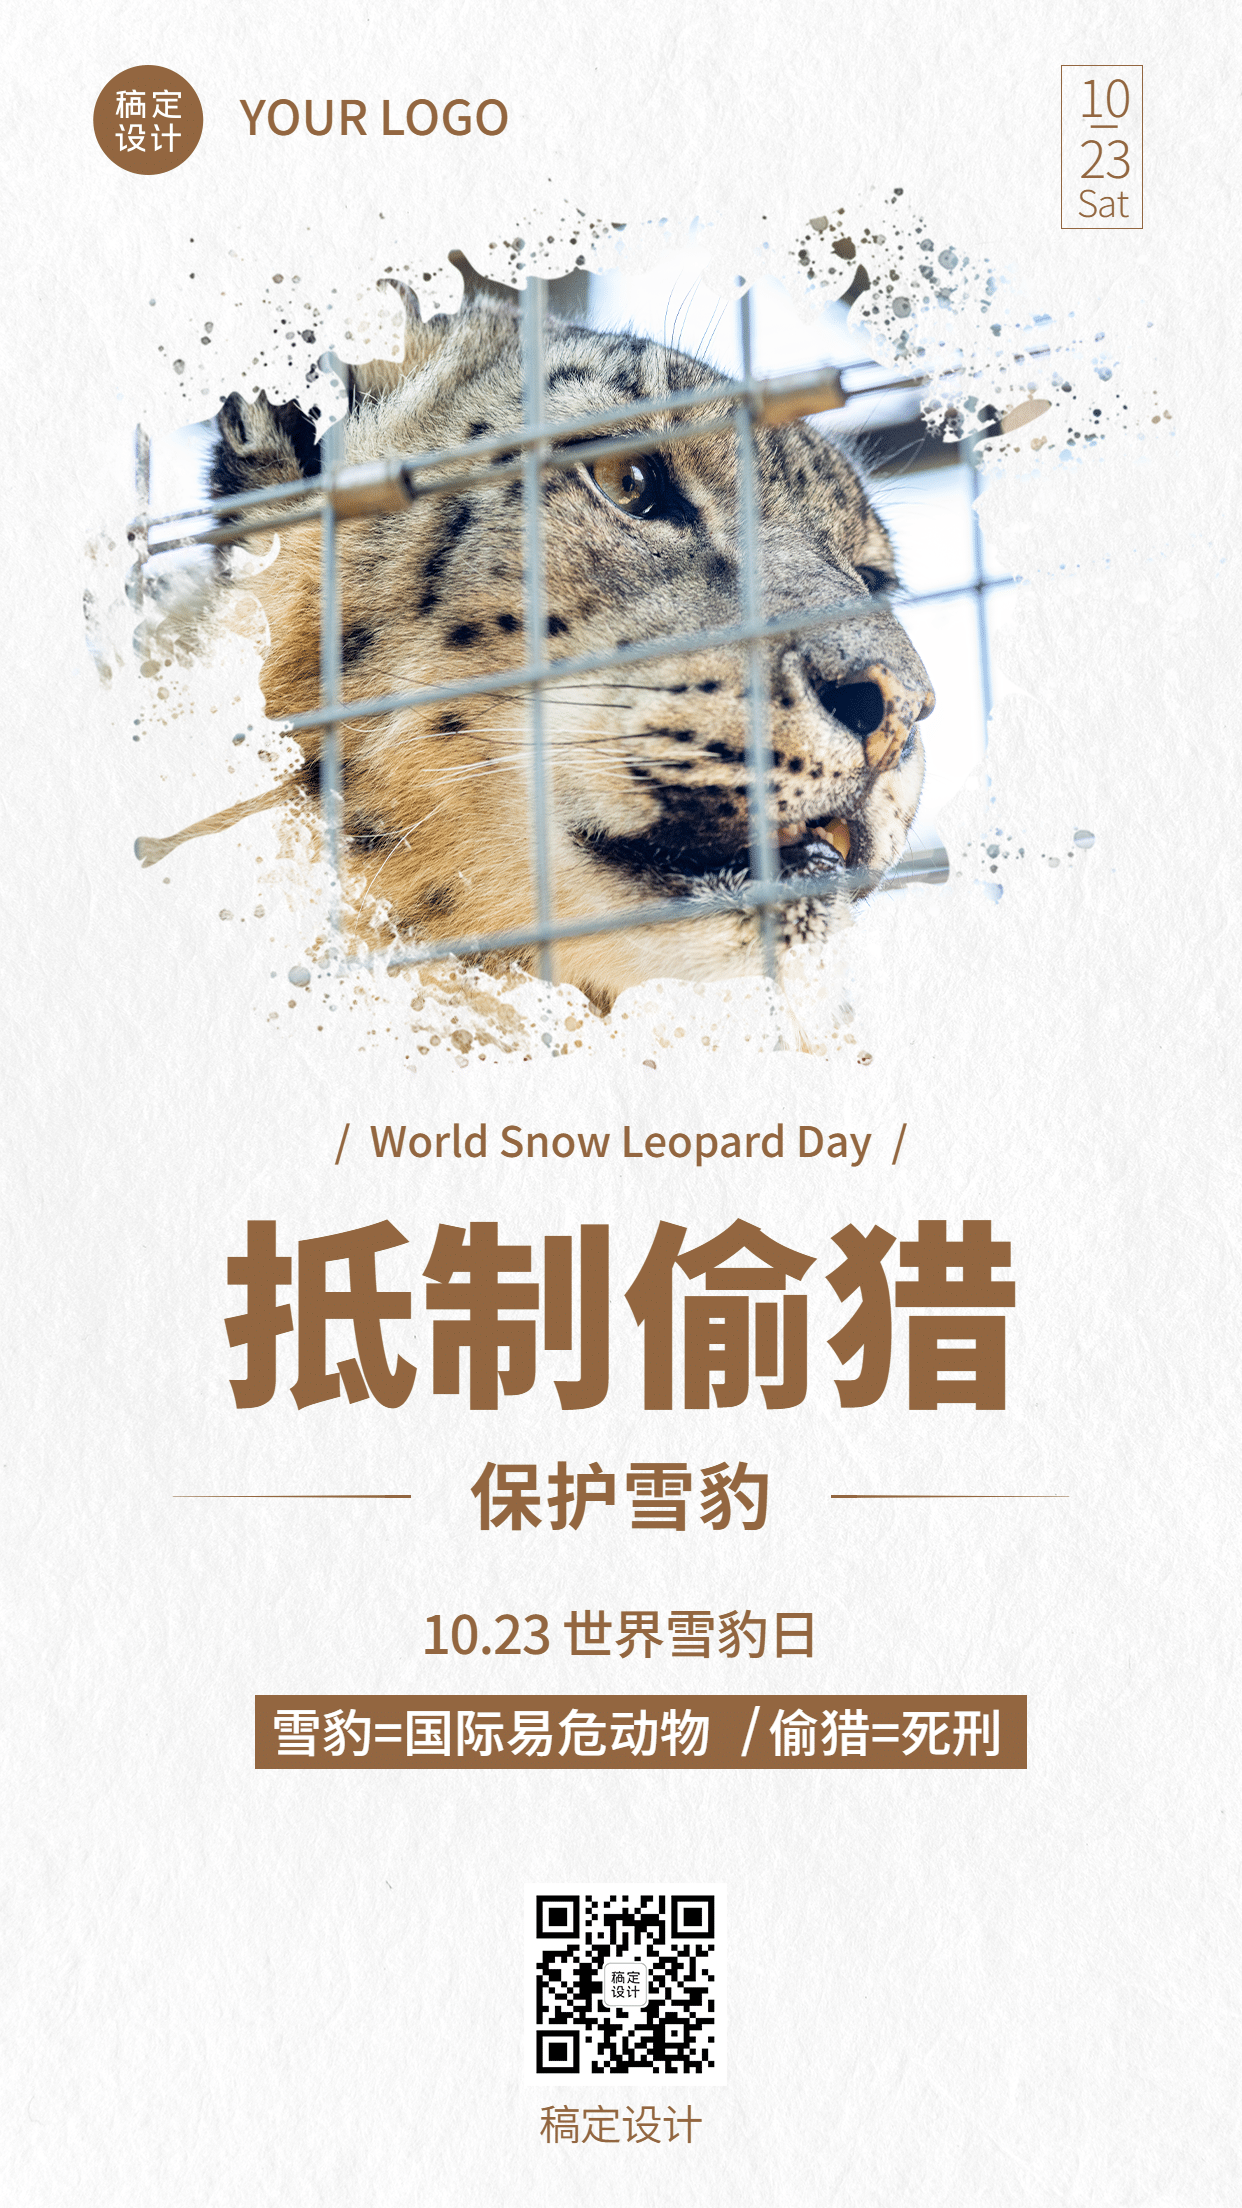 世界雪豹日保护珍稀动物公益宣传实景海报预览效果